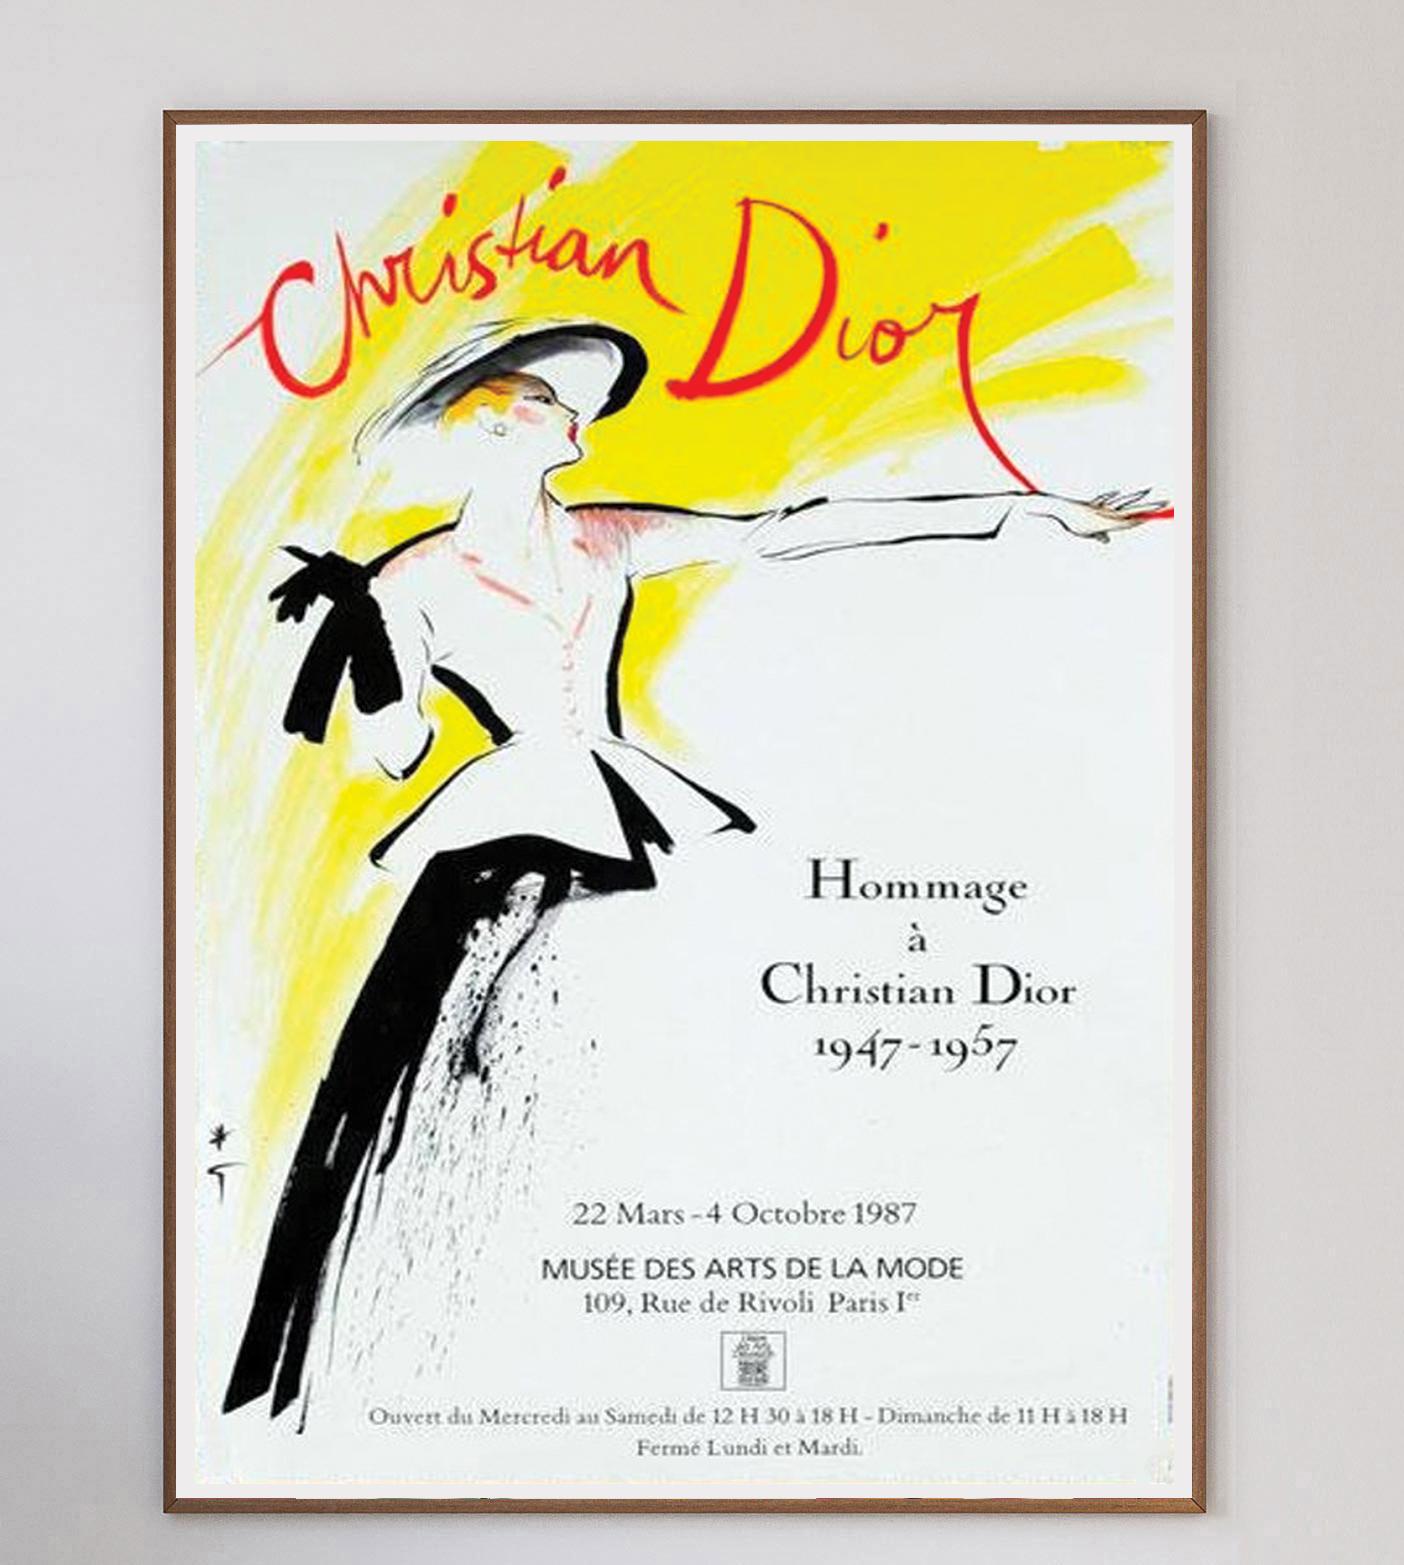 Célébrant une décennie de travail de Dior entre 1947 et 1957, cette superbe affiche de l'exposition de 1987 à Paris présente des œuvres de l'incroyable affichiste René Gruau. Connu pour ses nombreuses collaborations avec Dior, Gruau est aussi